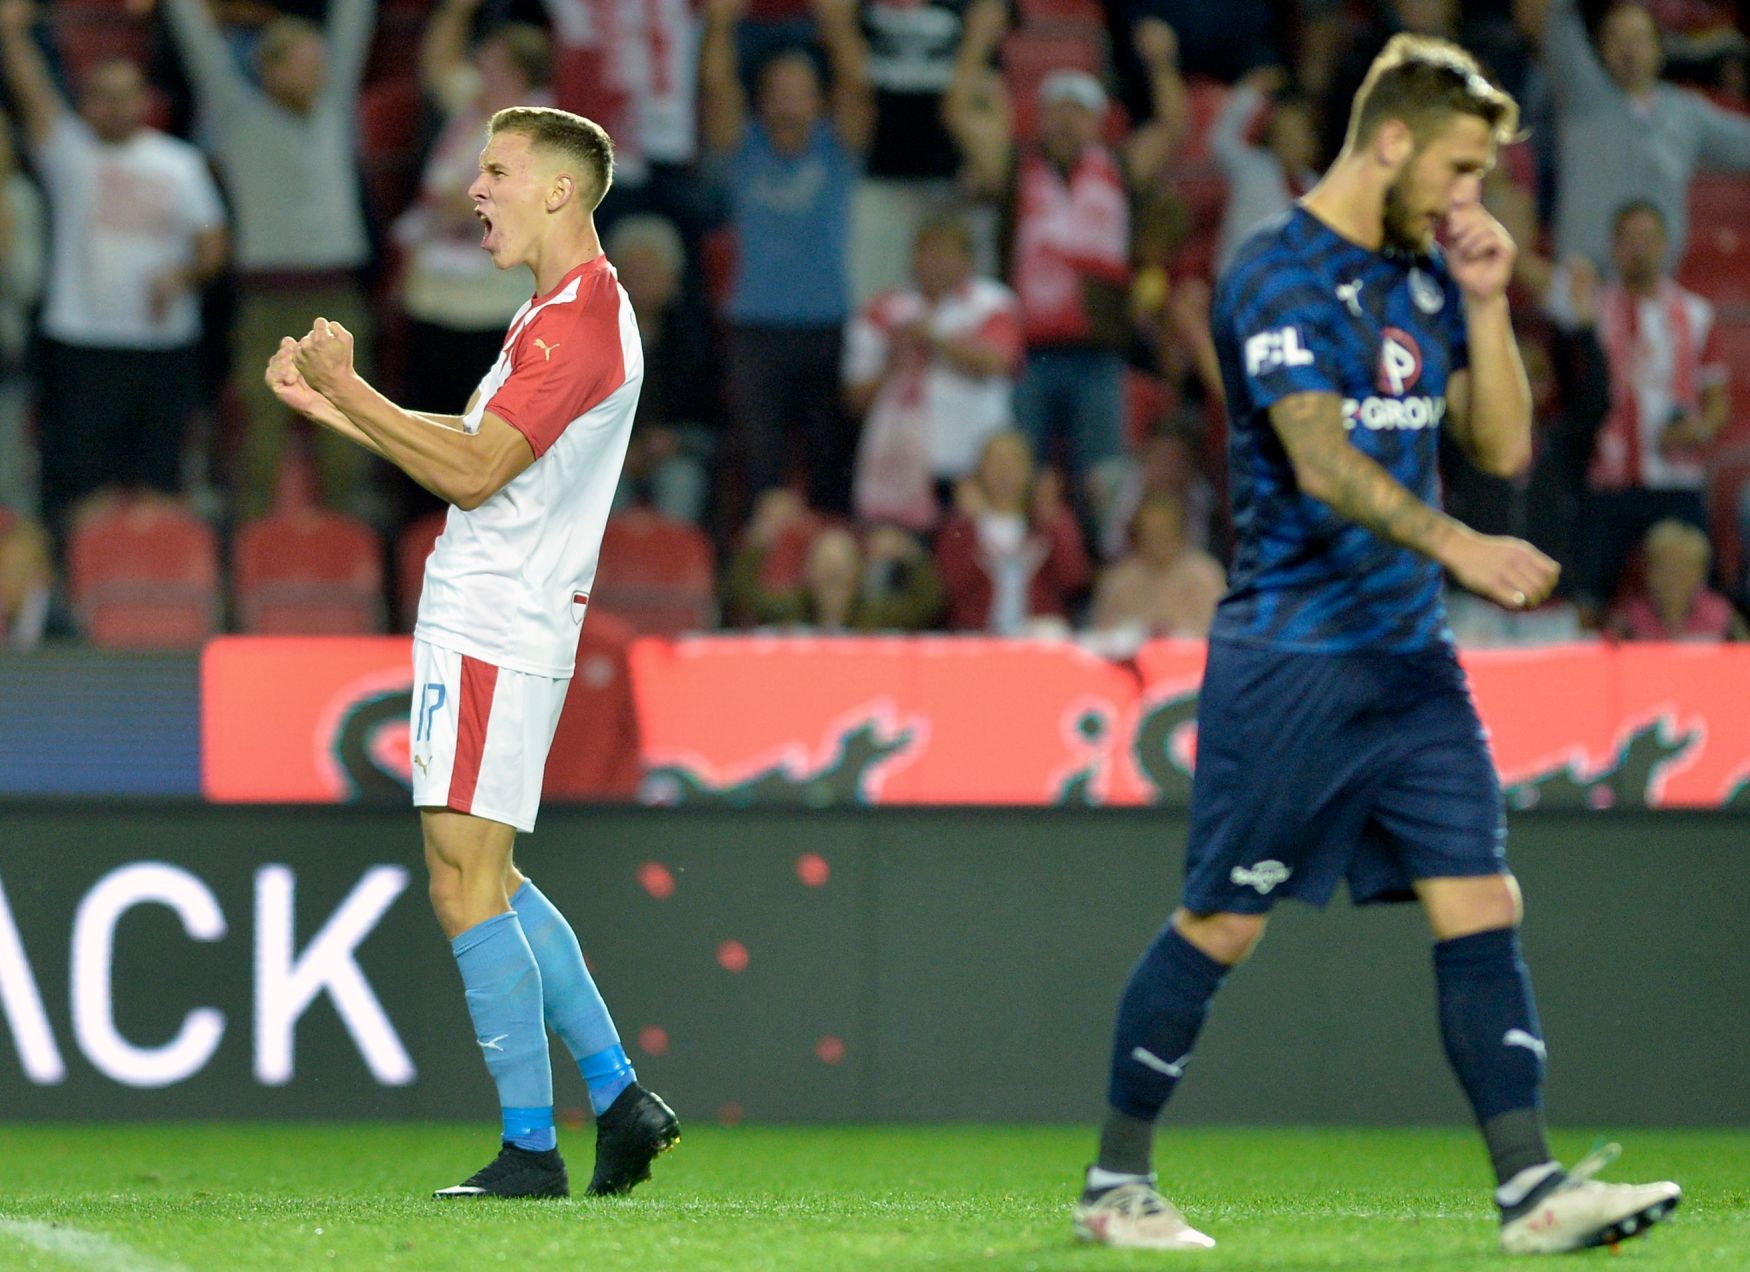 fotbal, Fortuna:Liga 2019/2020, Slavia Praha - Slovácko, Lukáš Provod, radost po gólu